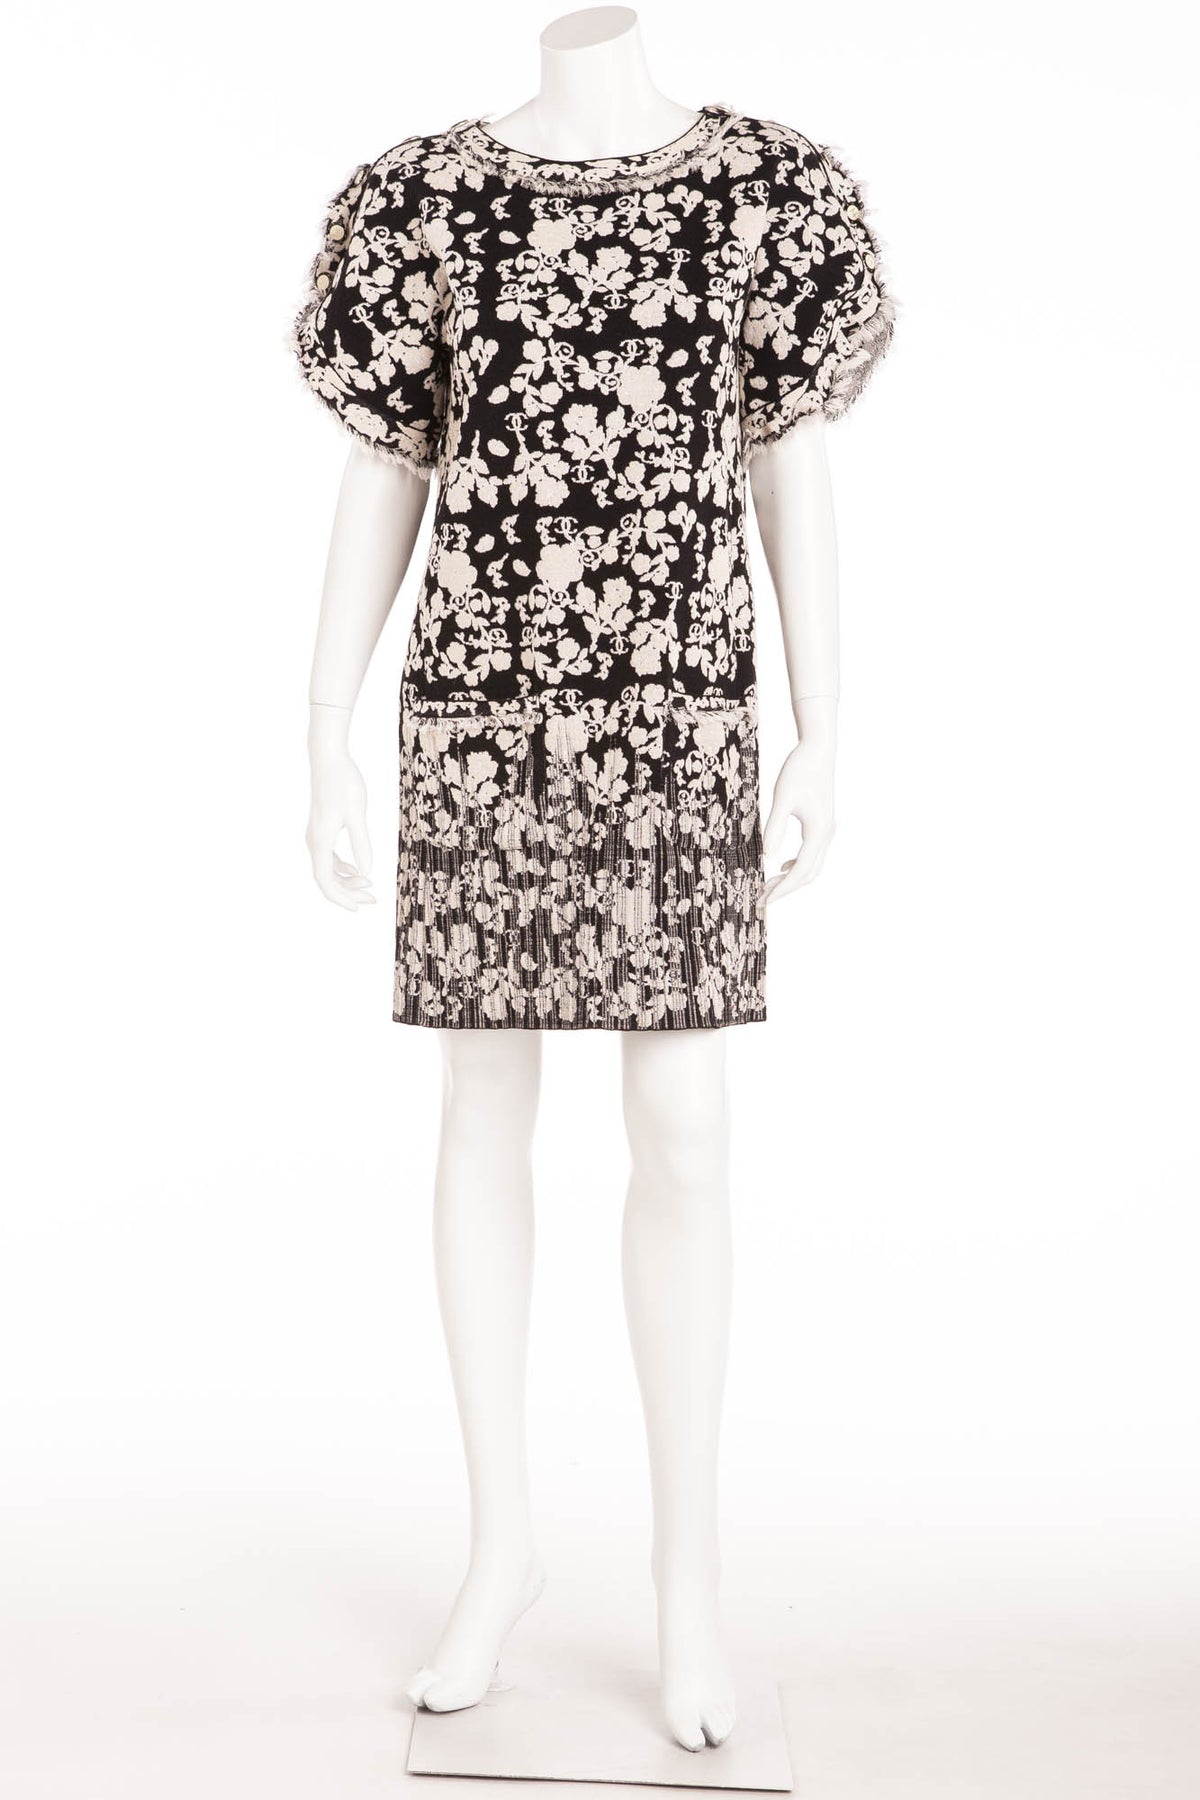 Chanel - White & Black Short Sleeve Floral Patterned Dress - FR 40